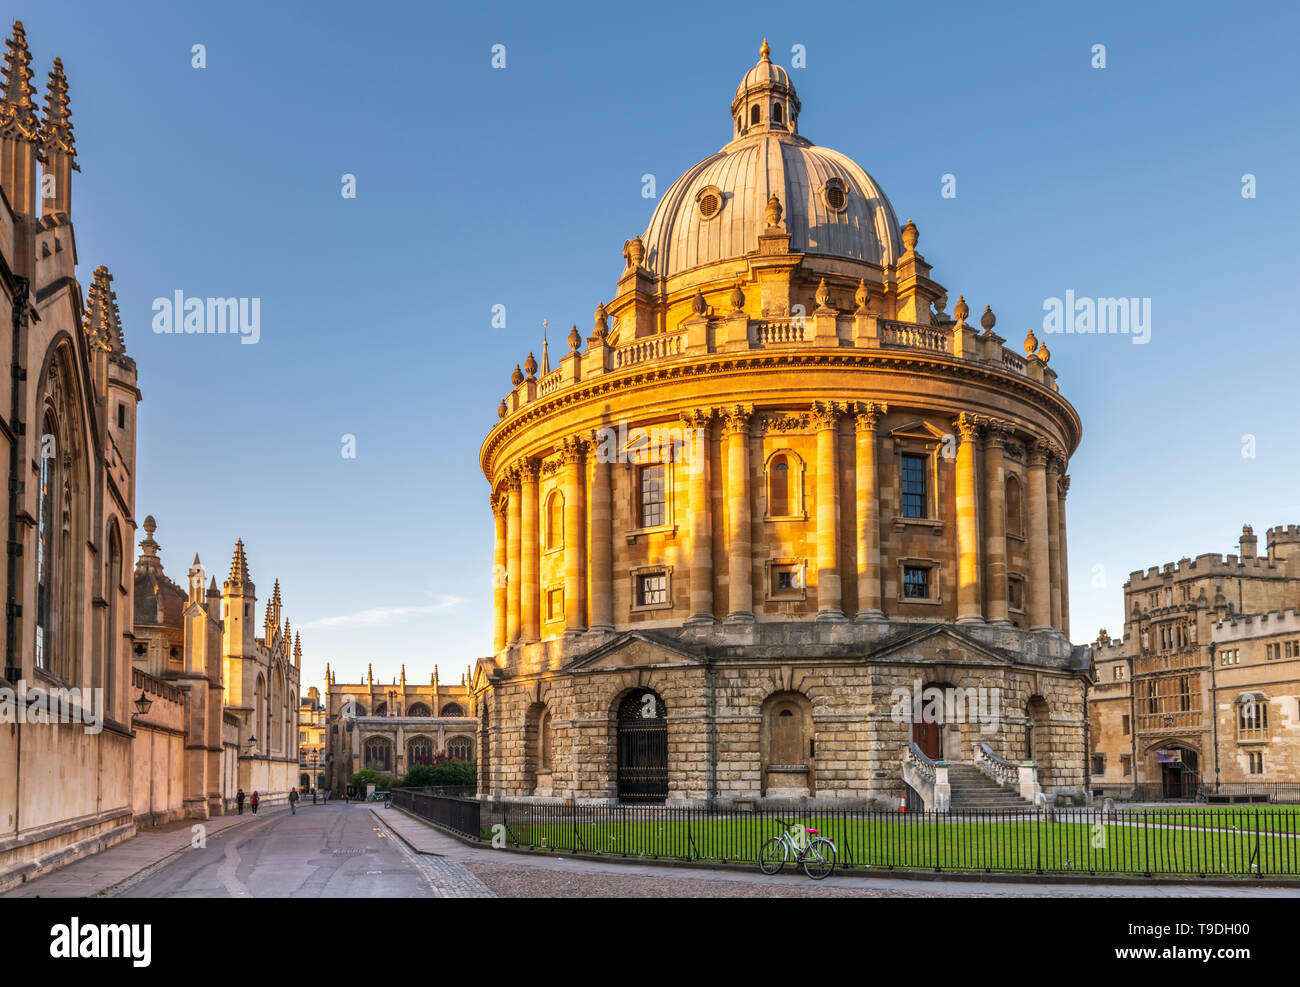 La Radcliffe Camera es un edificio de la Universidad de Oxford, diseñado por James Gibbs en el estilo neo-clásico. El famoso edificio emblemático en el centr Foto de stock